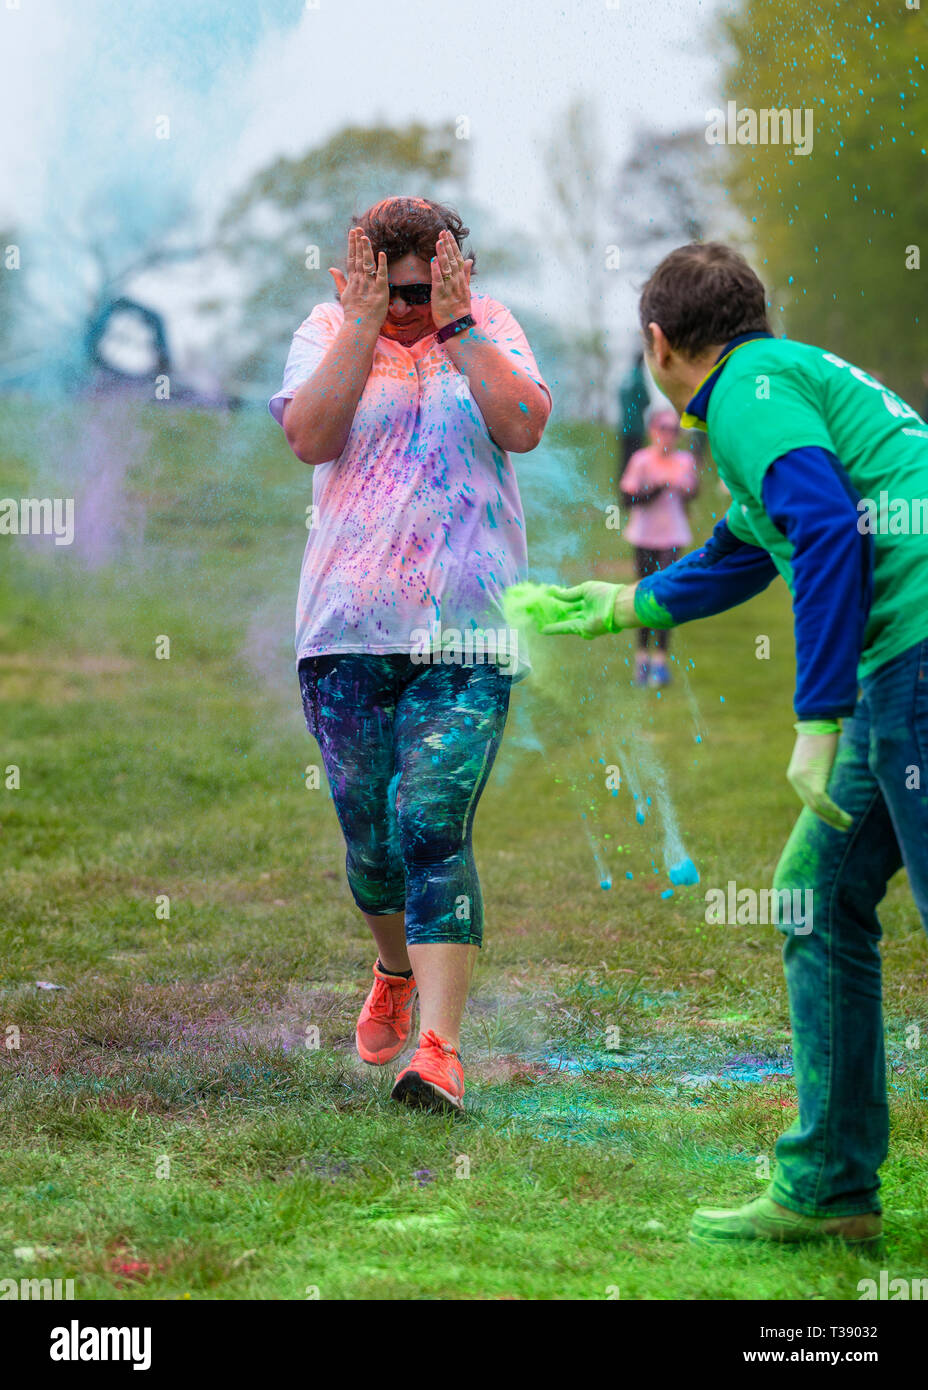 Femelle adulte walker avec les mains sur son visage se couvrir de peinture sur Macmillan Cancer 5K fun run de couleur. Banque D'Images